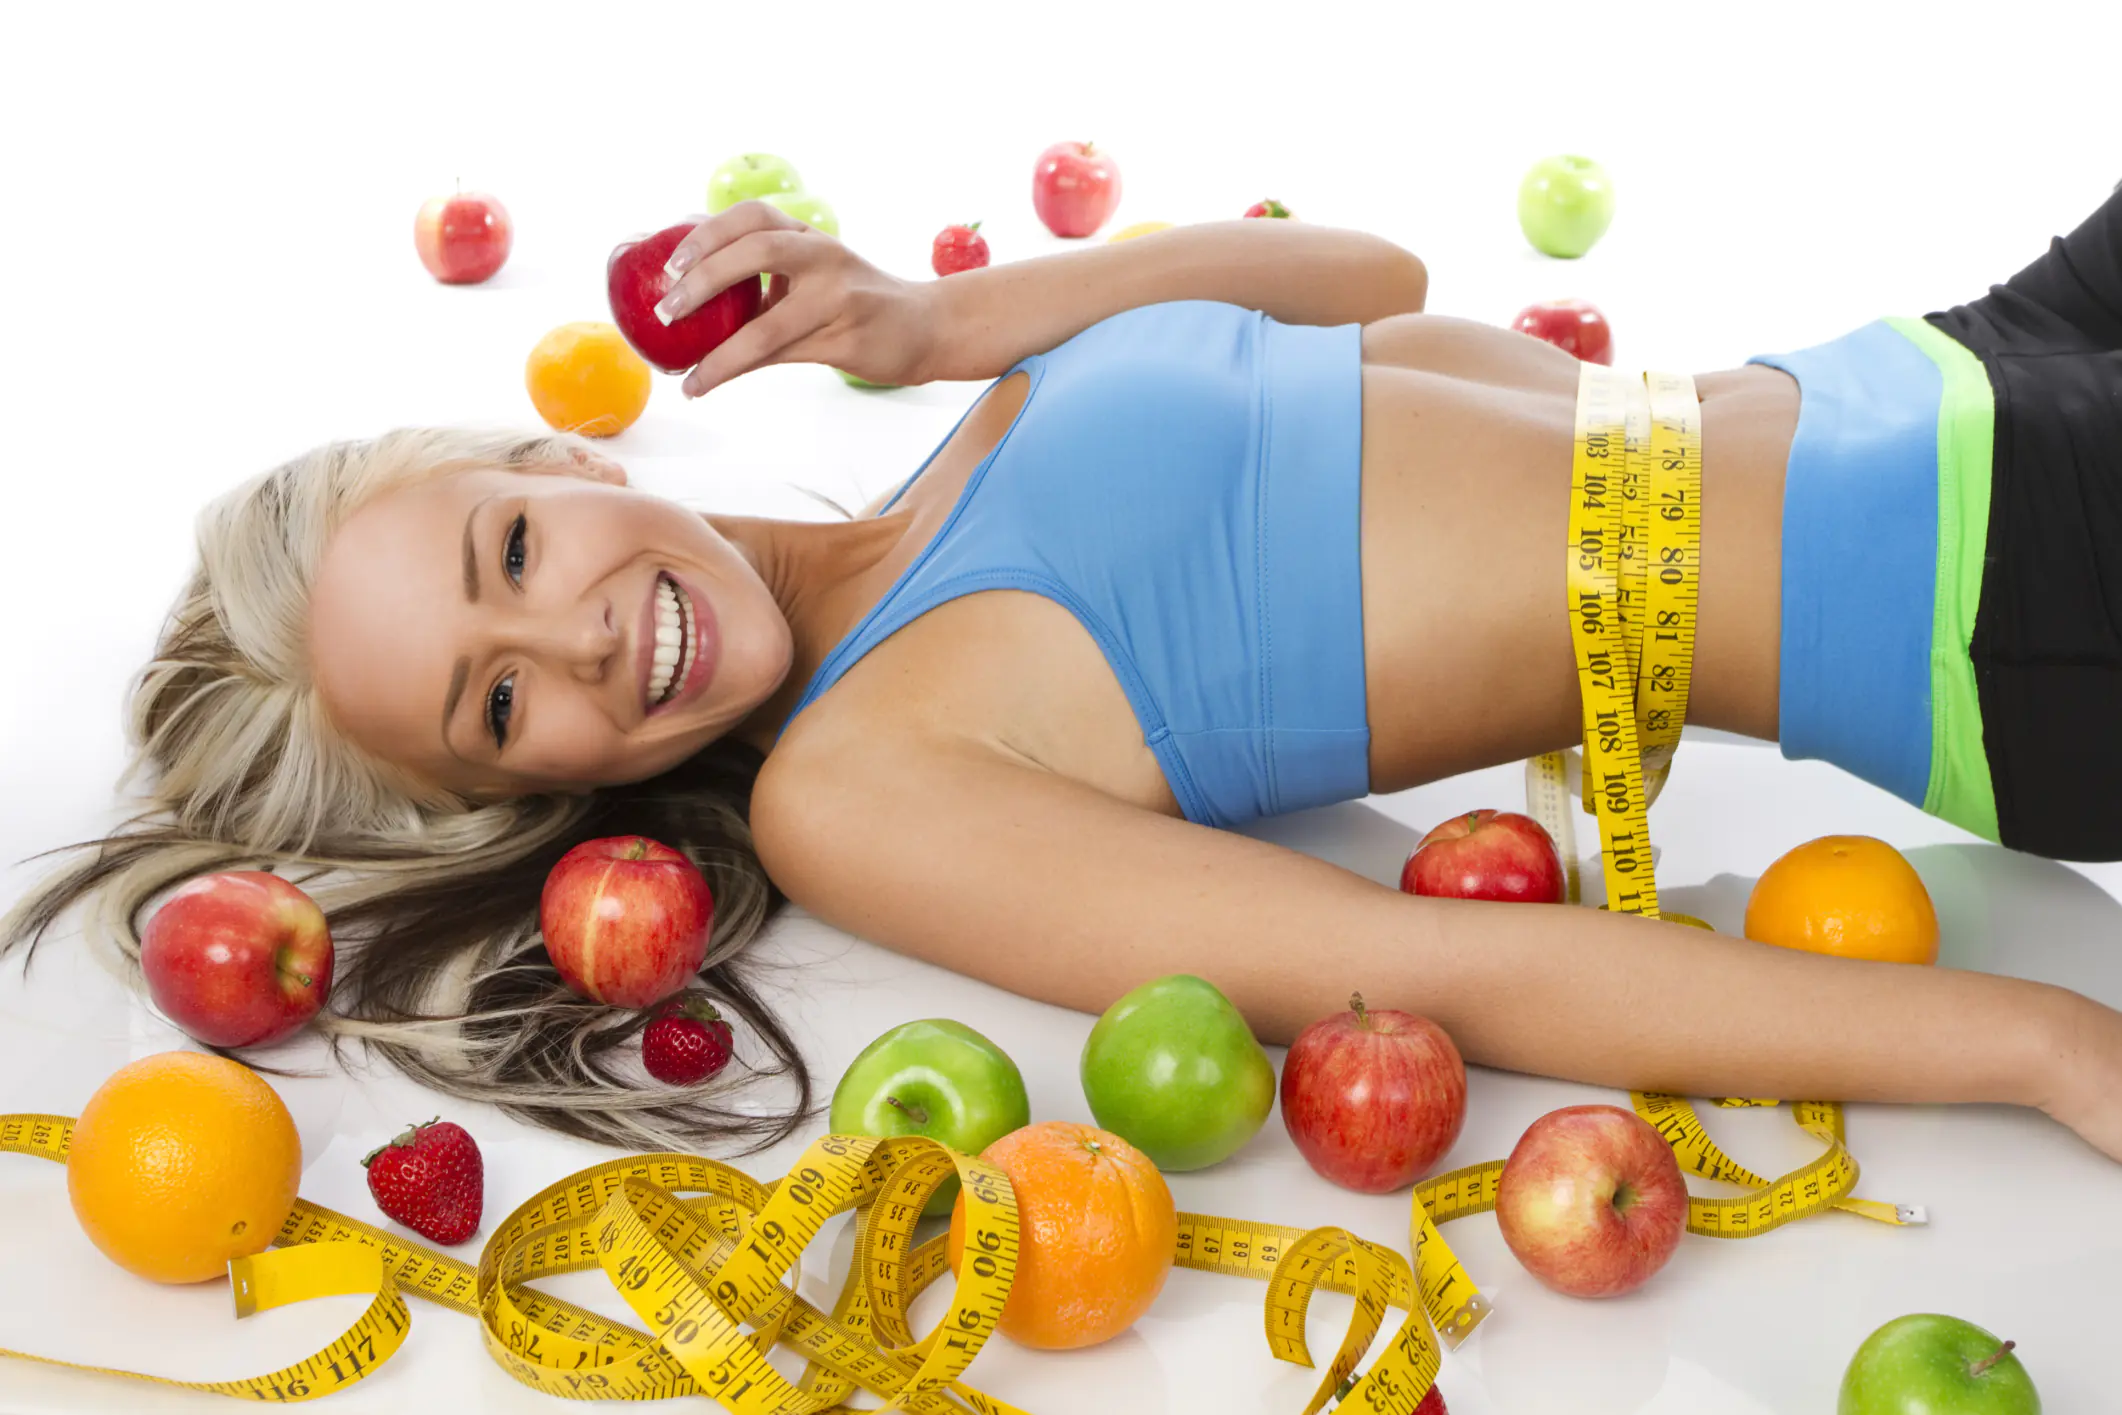 Які дієти для схуднення дають результат і не шкодять здоров'ю